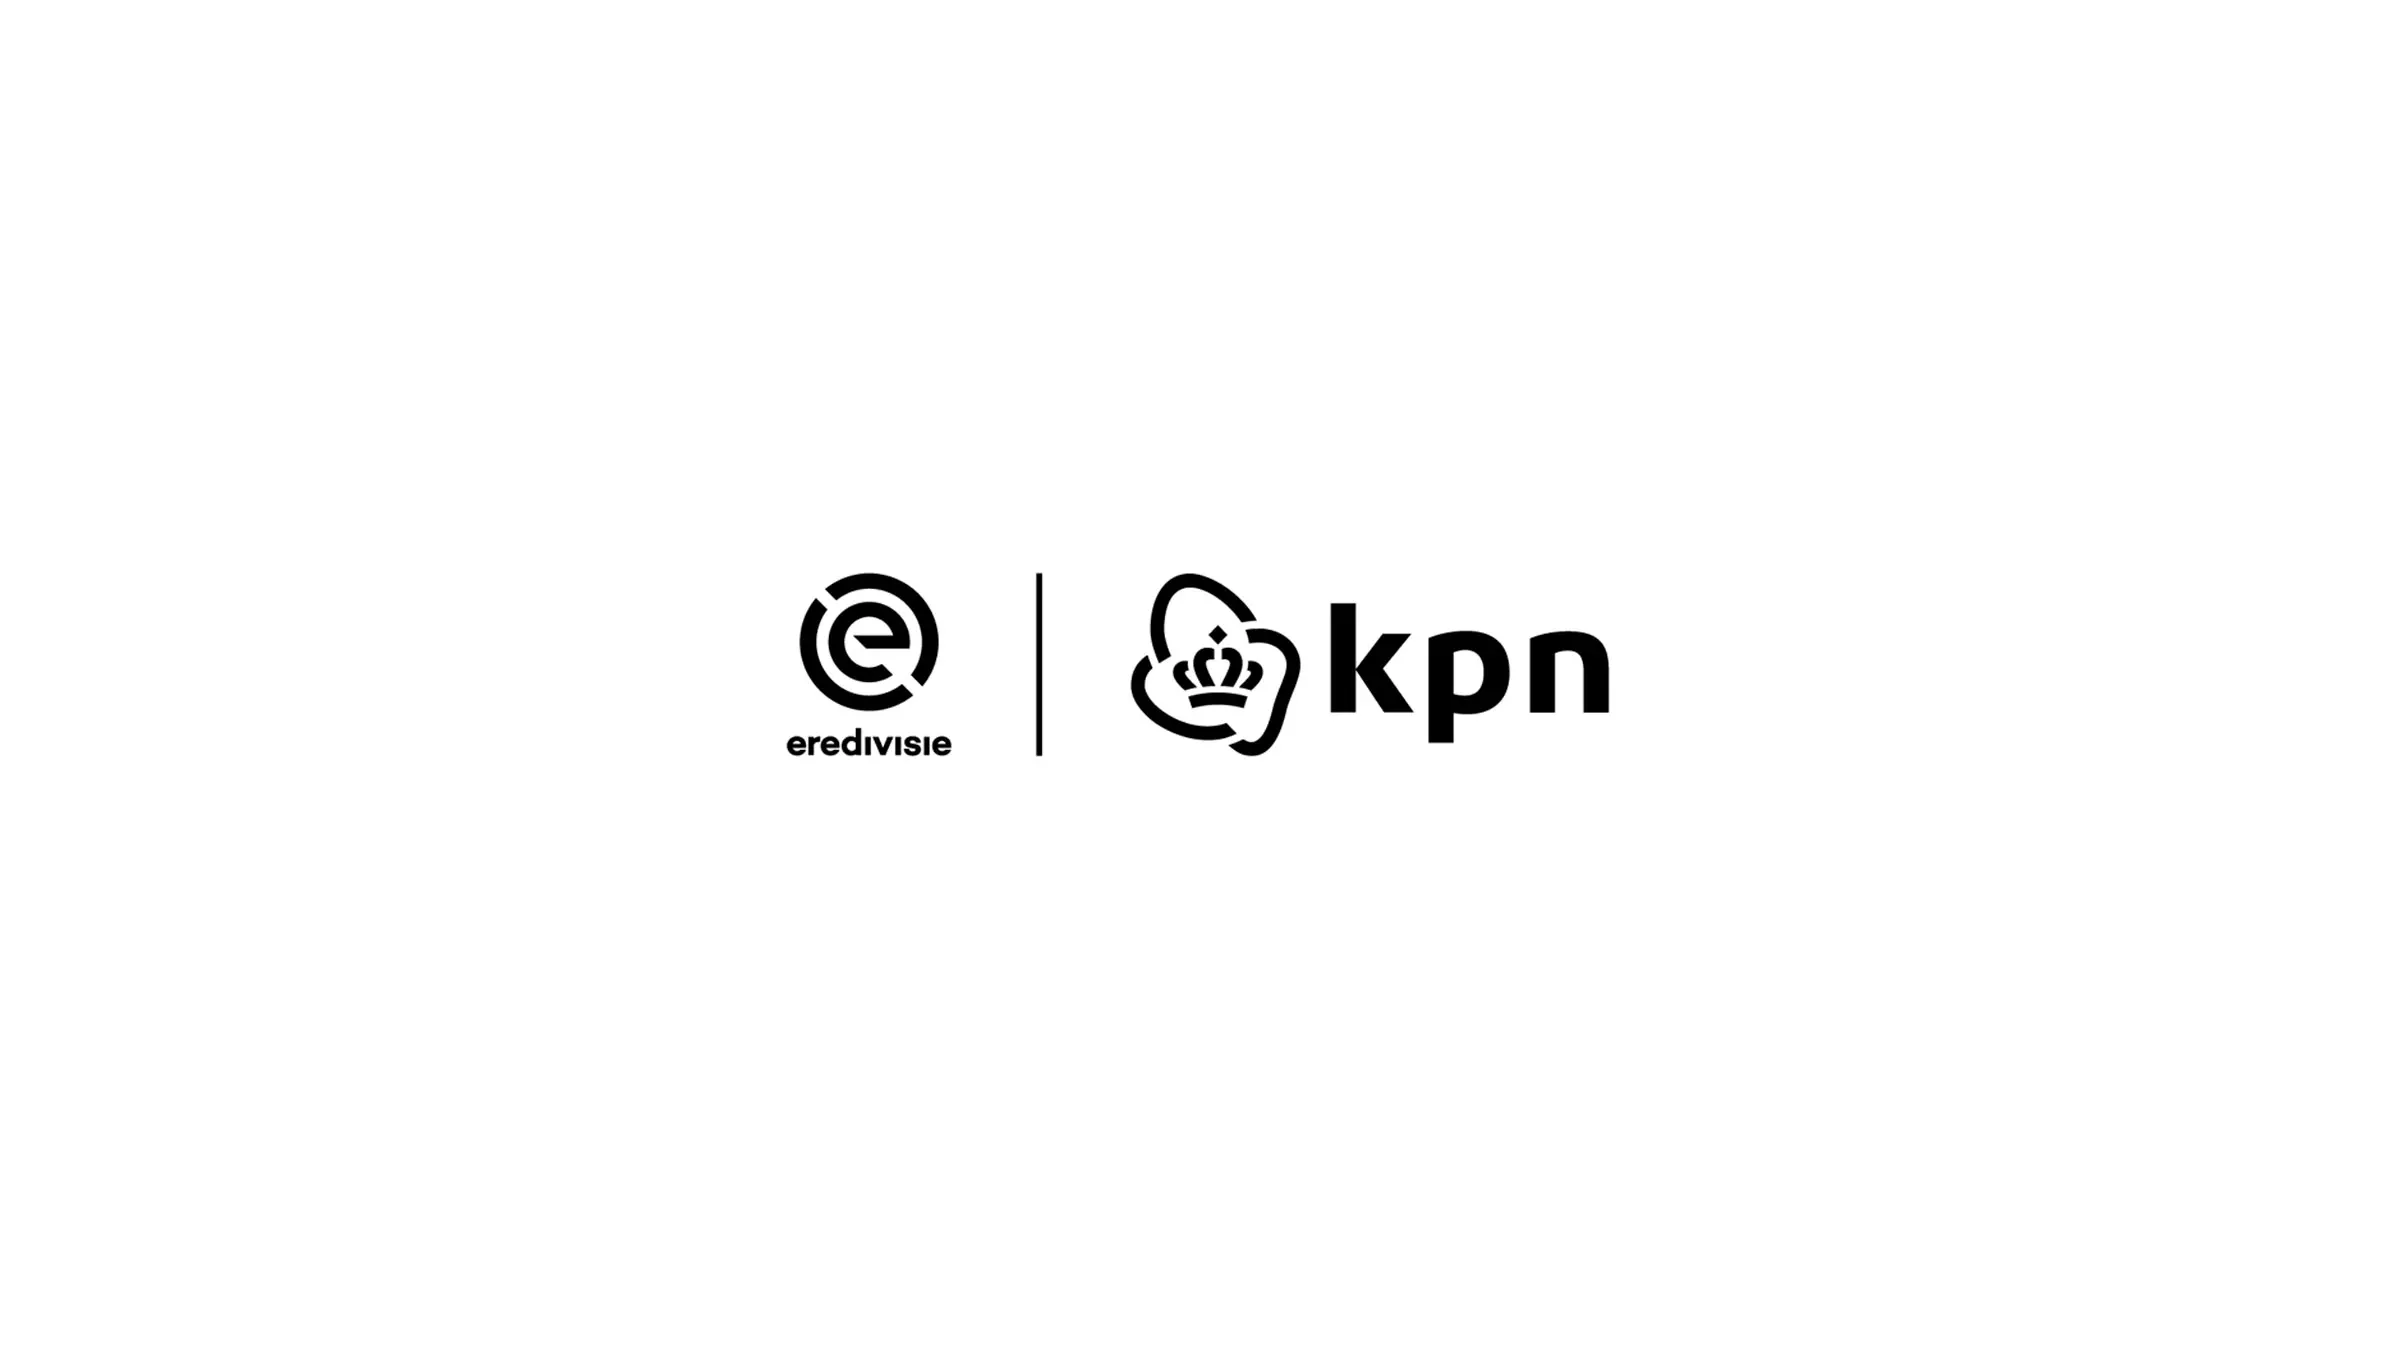 KPN en Eredivisie logo's